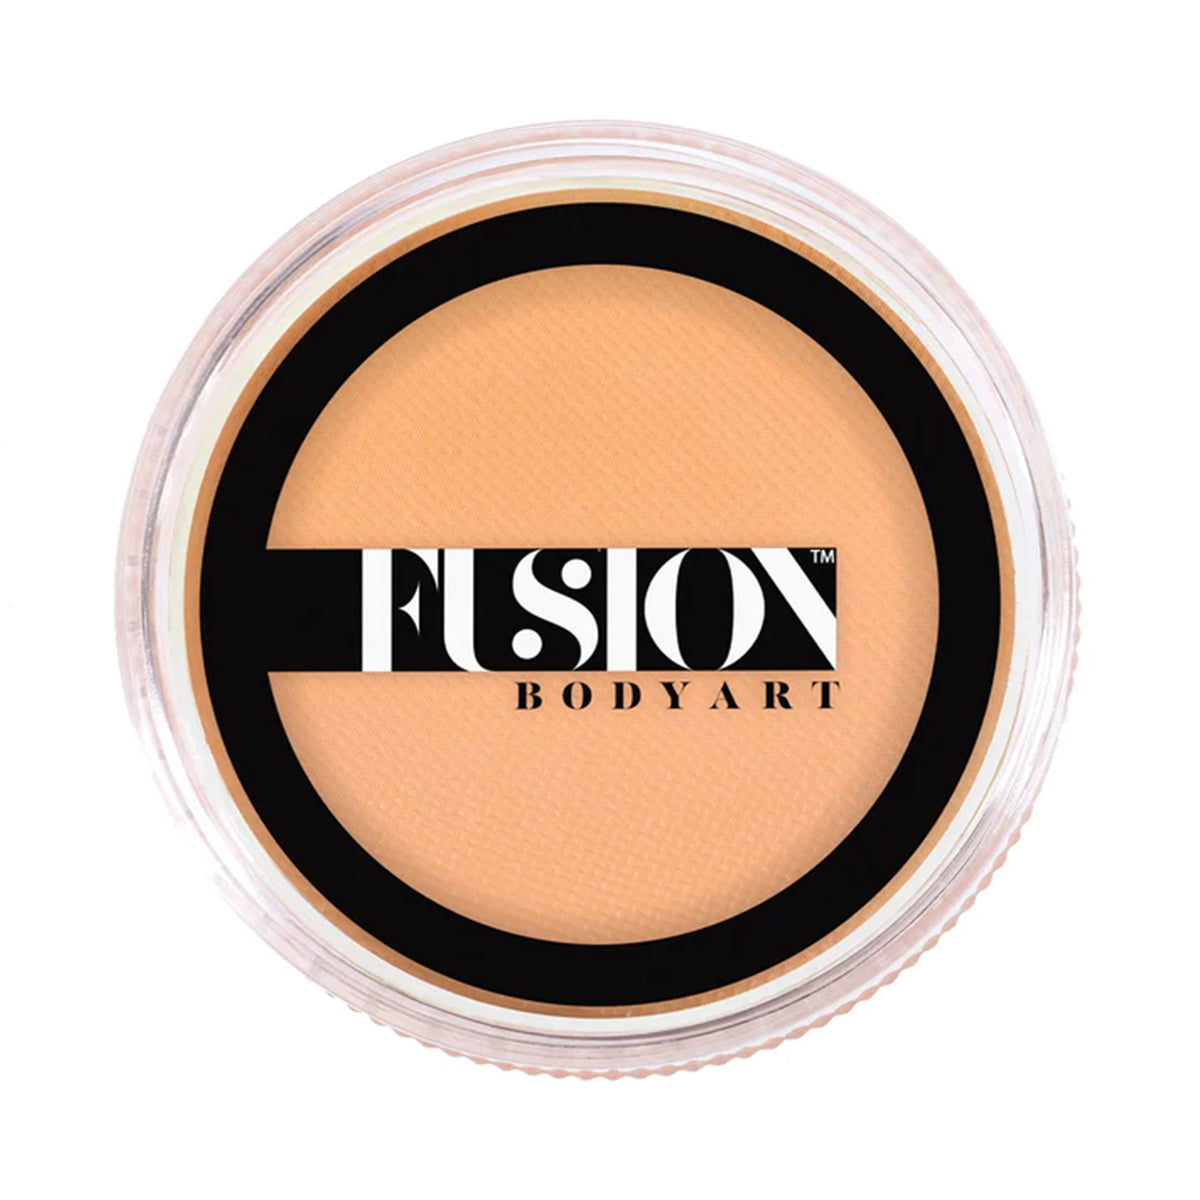 Fusion Body Art Face Paint - Prime Pastel Orange (32 gm)